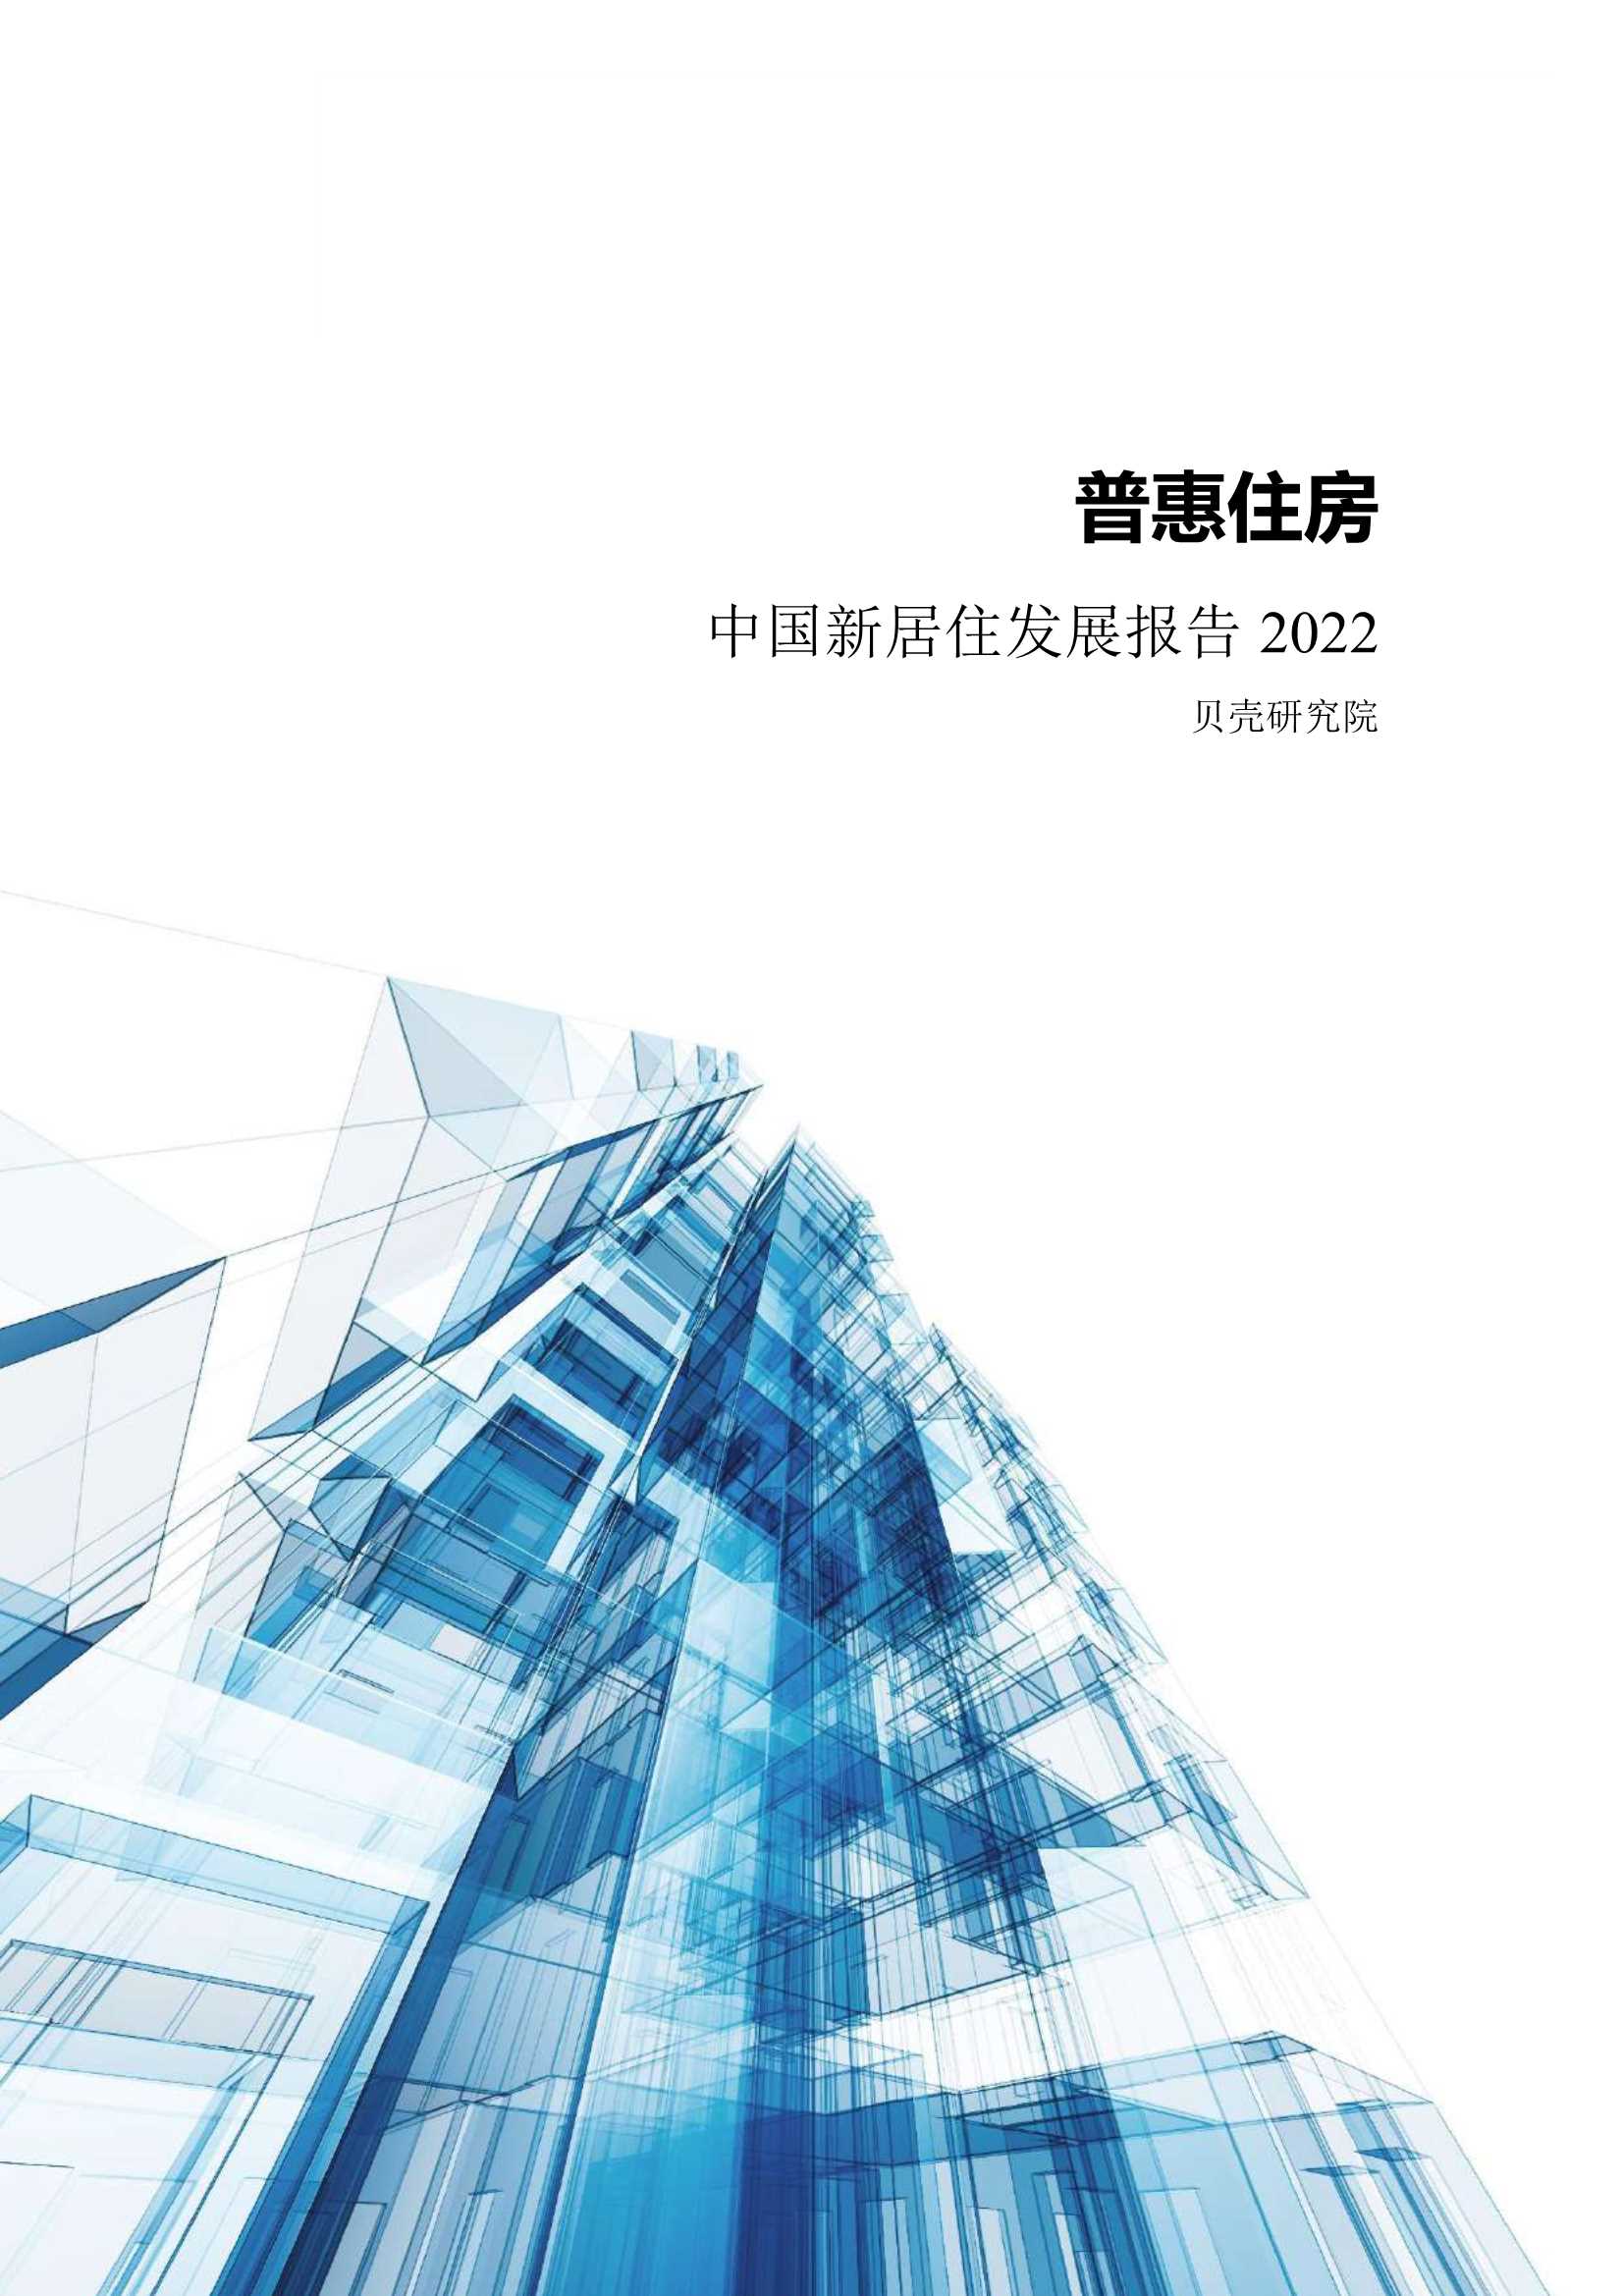 贝壳研究院-普惠住房 中国新居住发展报告2022-2022.01-101页